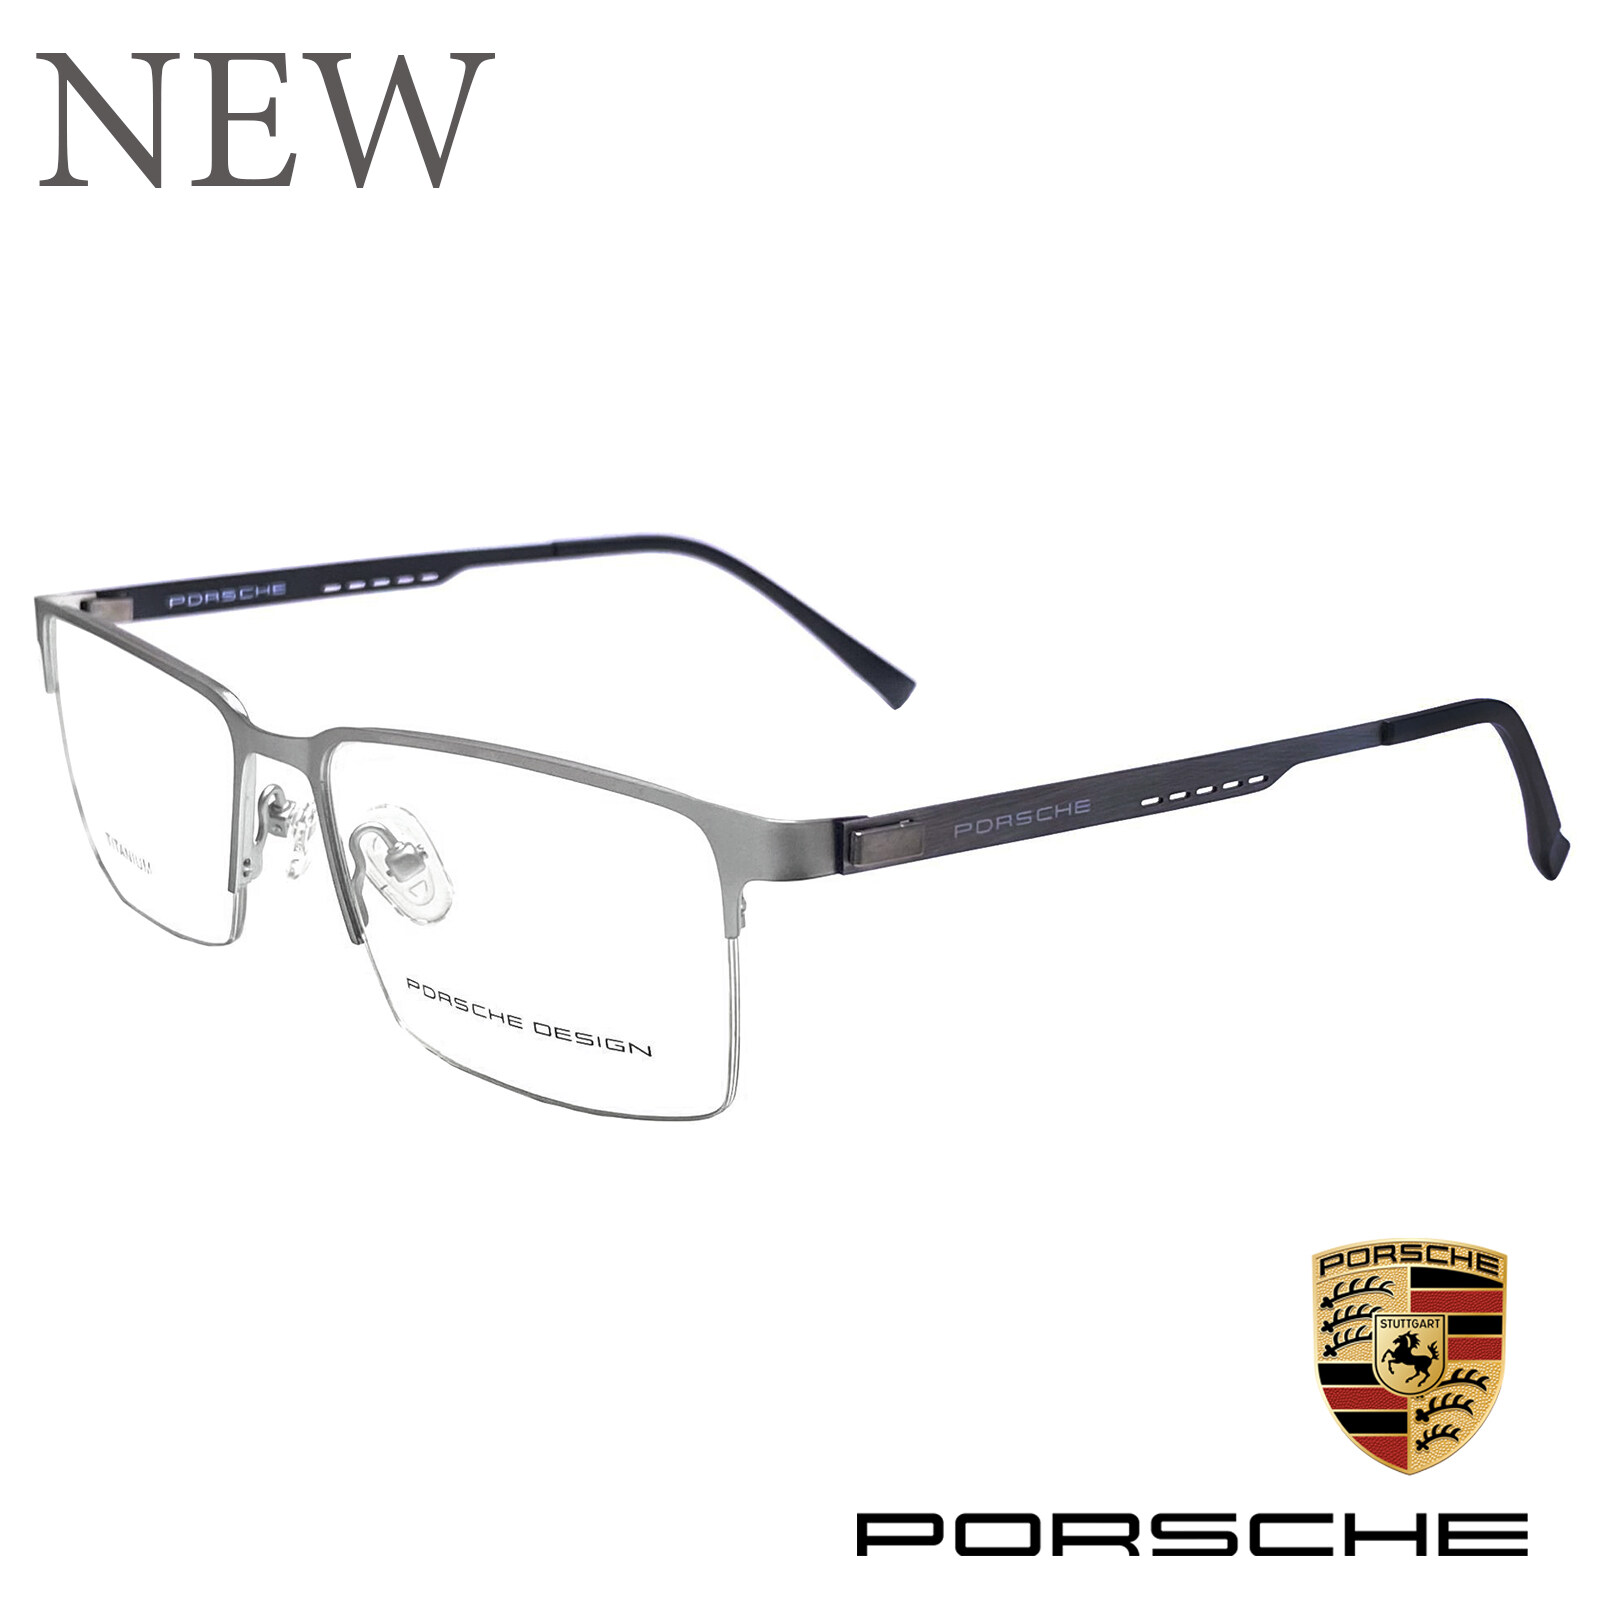 PORSCHE กรอบแว่นตา สำหรับตัดเลนส์ แว่นตา Fashion รุ่น 8840 กรอบเซราะ ทรงเหลี่ยม ขาข้อต่อ วัสดุ ไทเทเนียมTitanium น้ำหนักเบาทนทาน รับตัดเลนส์ทุกชนิด